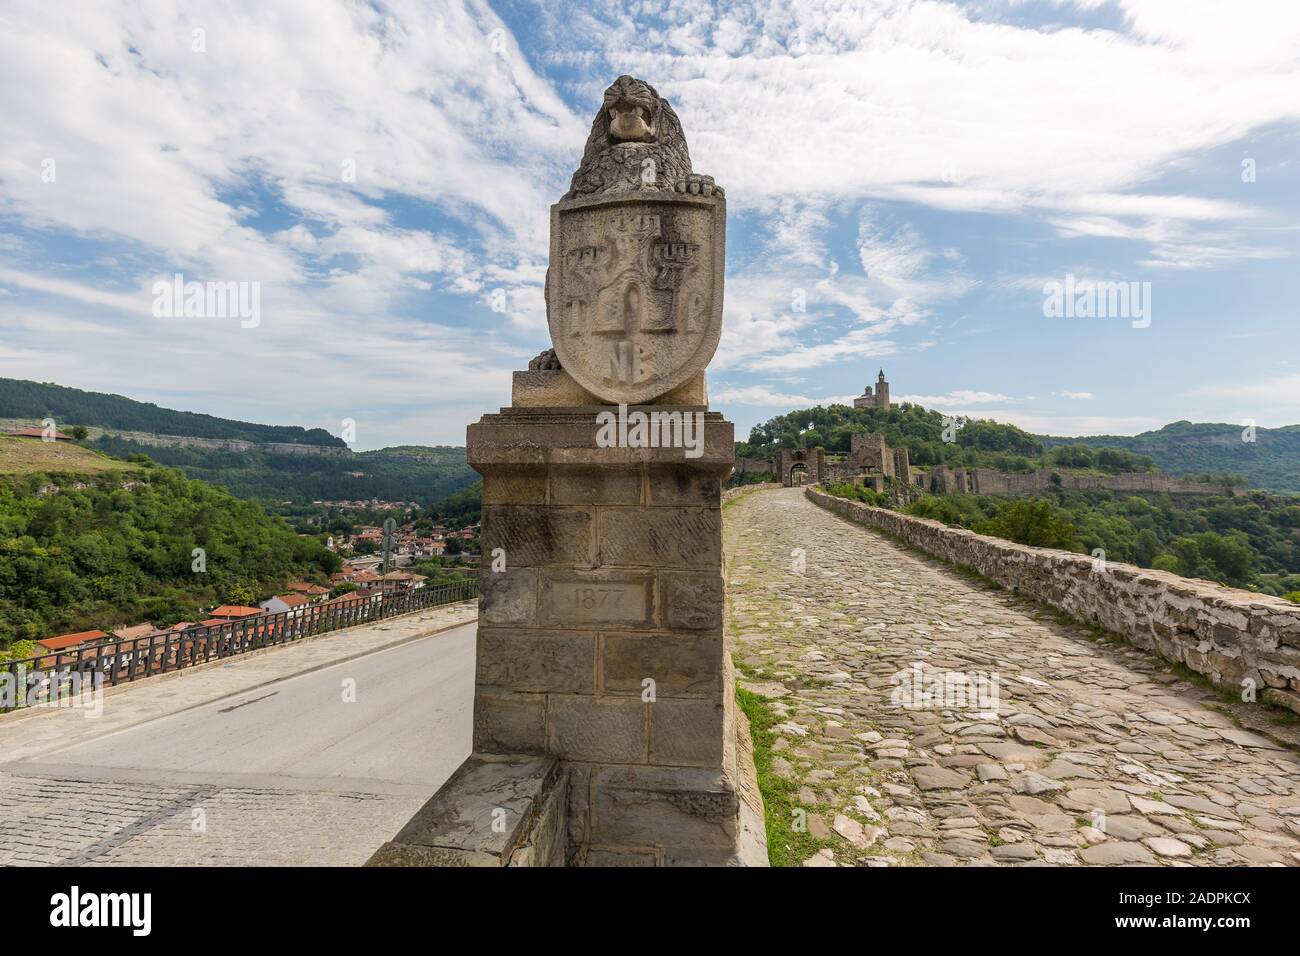 Veliko Tarnovo liegt am Fluss Yantra entfernt und ist bekannt als die historische Hauptstadt des Zweiten Bulgarischen Reiches bekannt, zieht viele Touristen Stockfoto